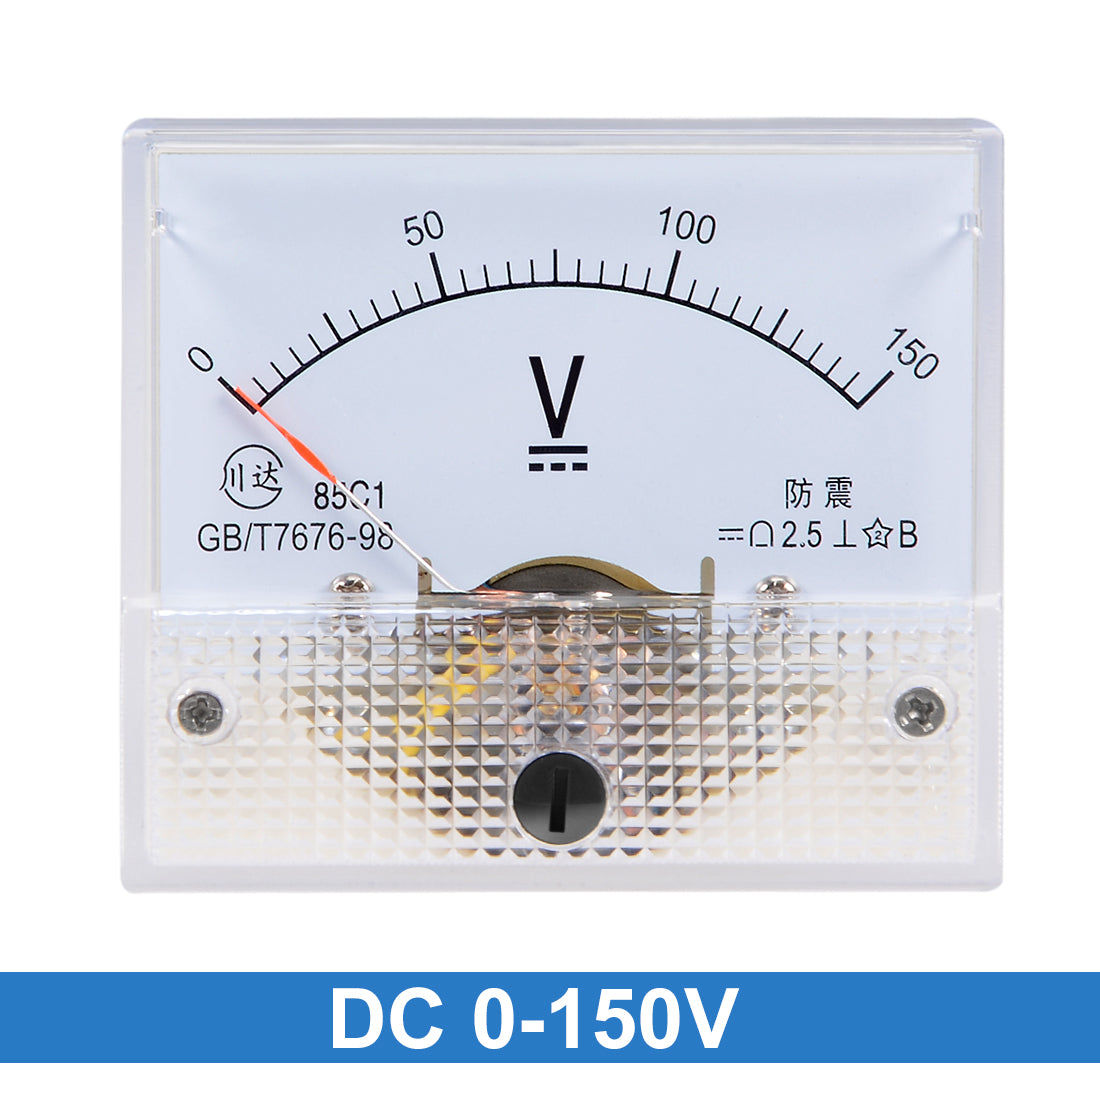 uxcell Uxcell DC 0-150V Analog Panel Voltage Gauge Volt Meter 85C1 2.5% Error Margin